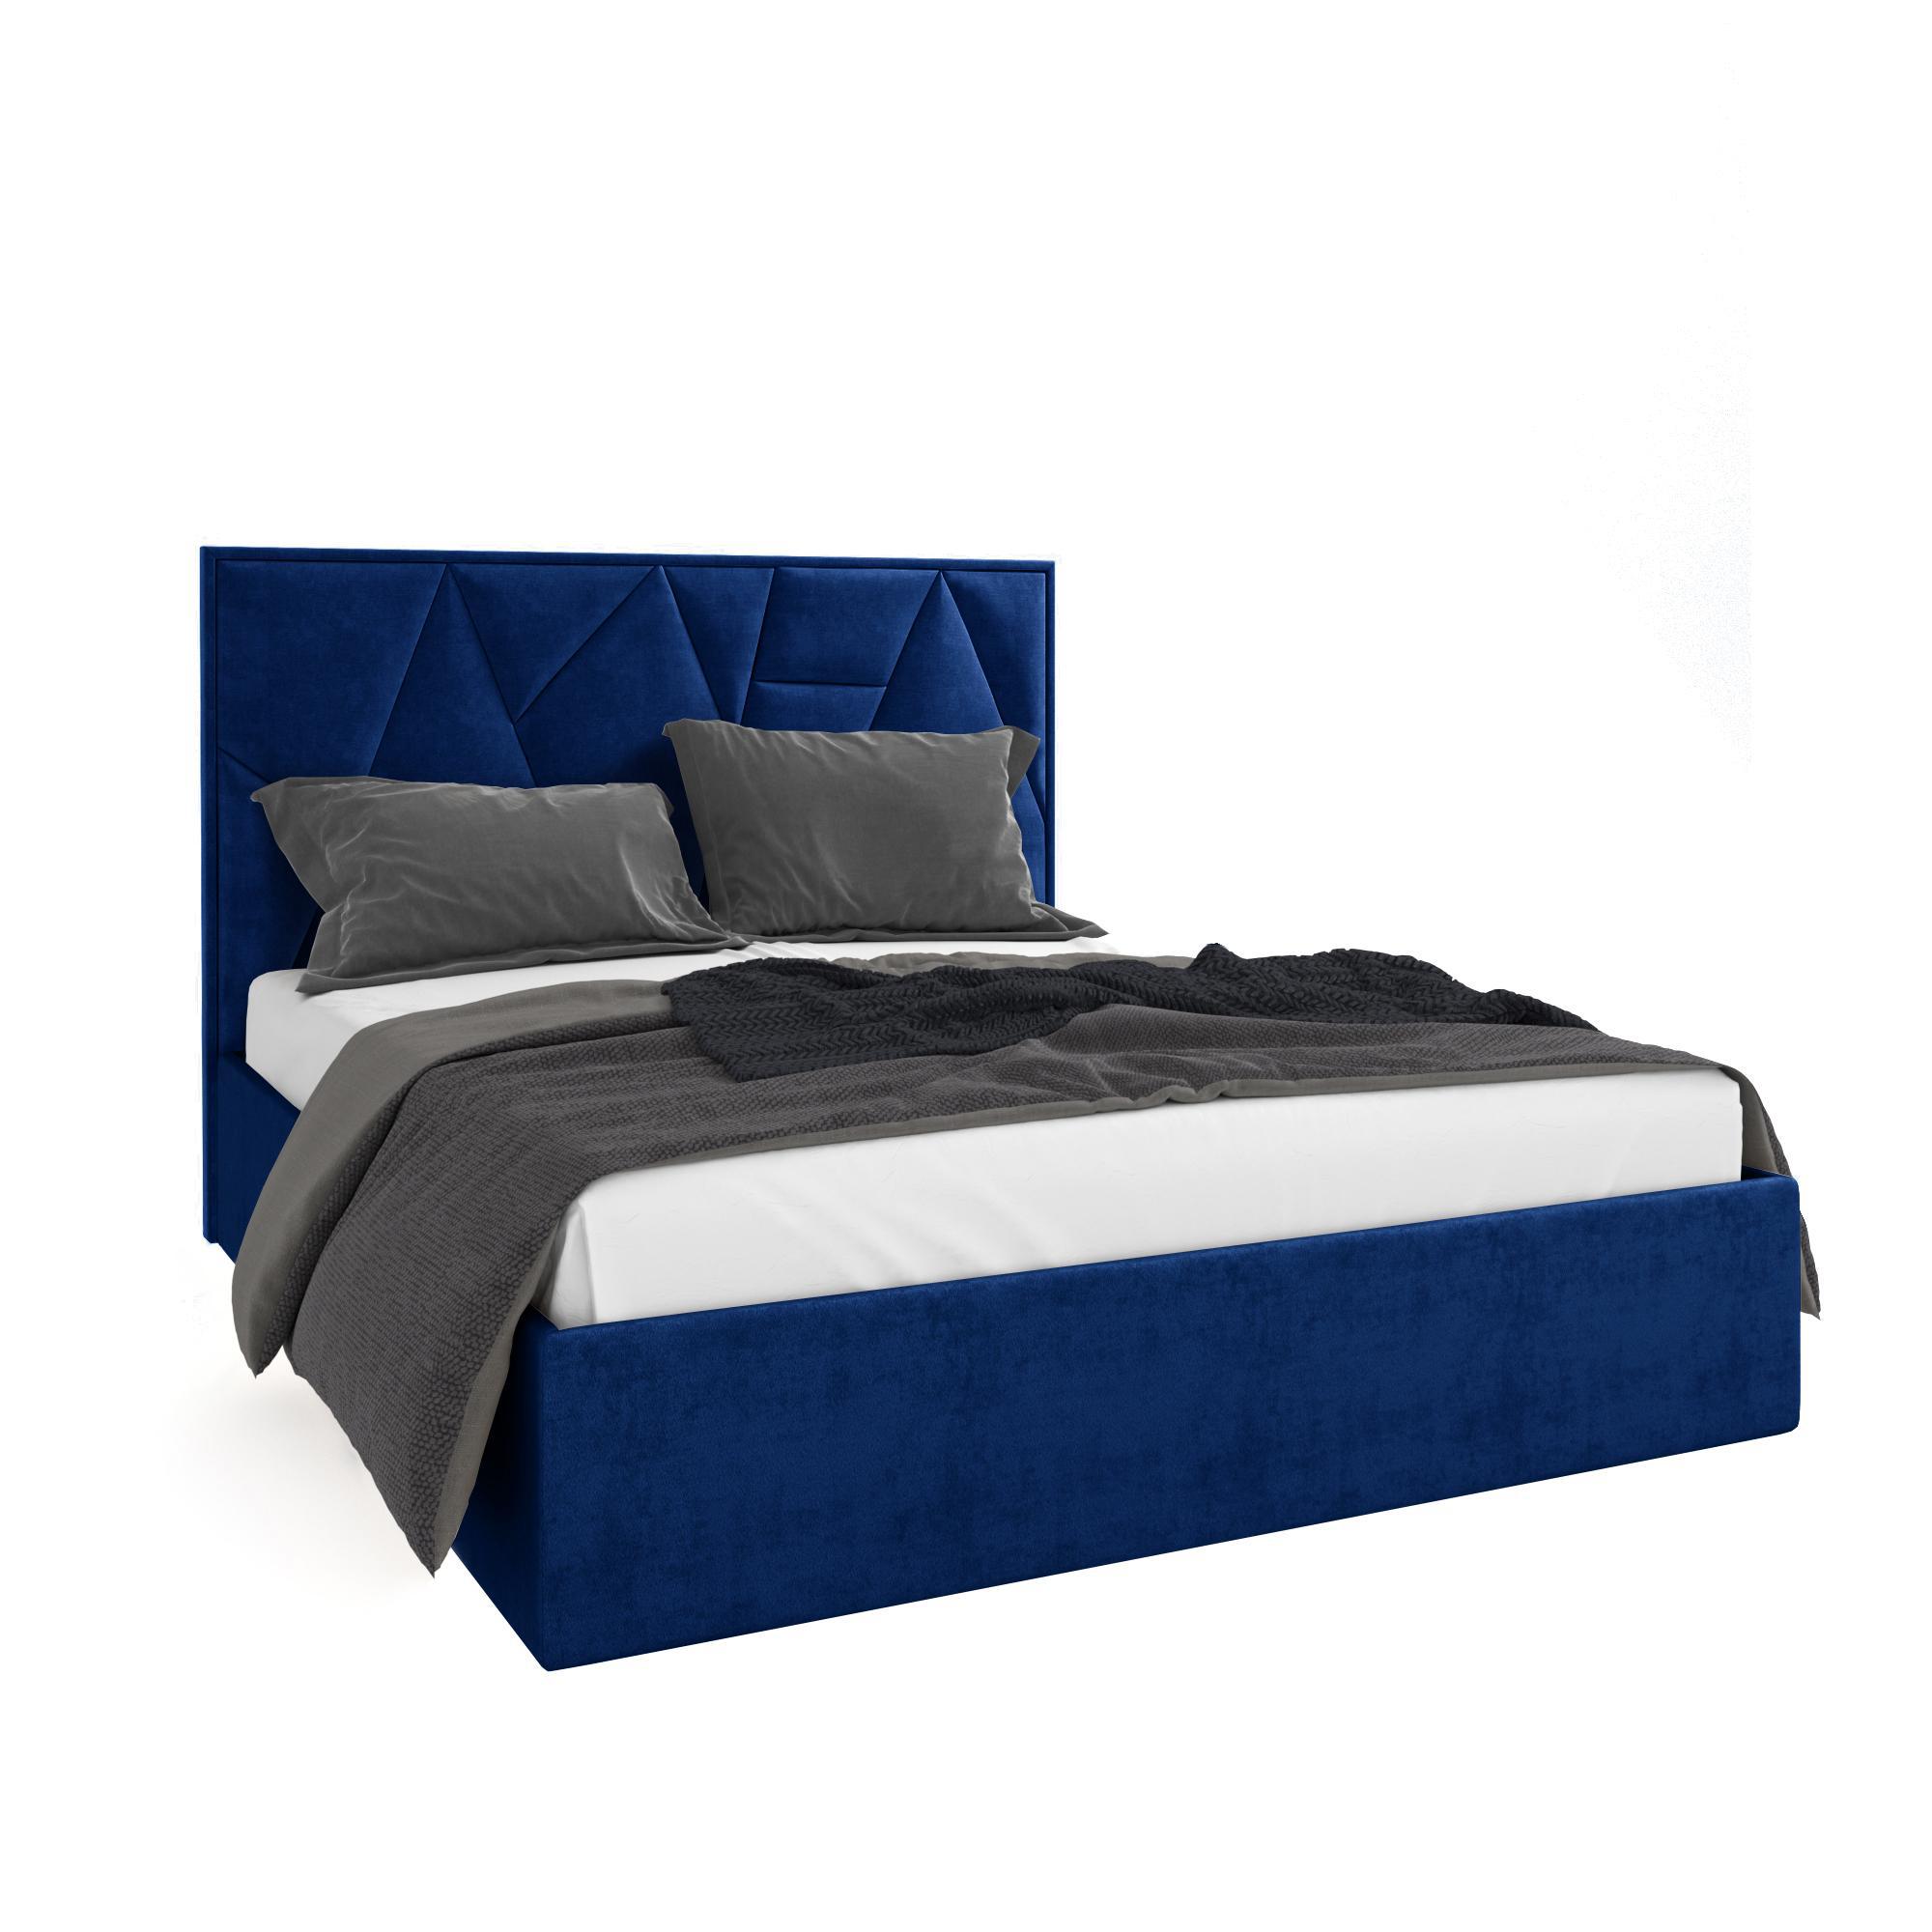 Кровать Липси синяя 160х200 изображение товара